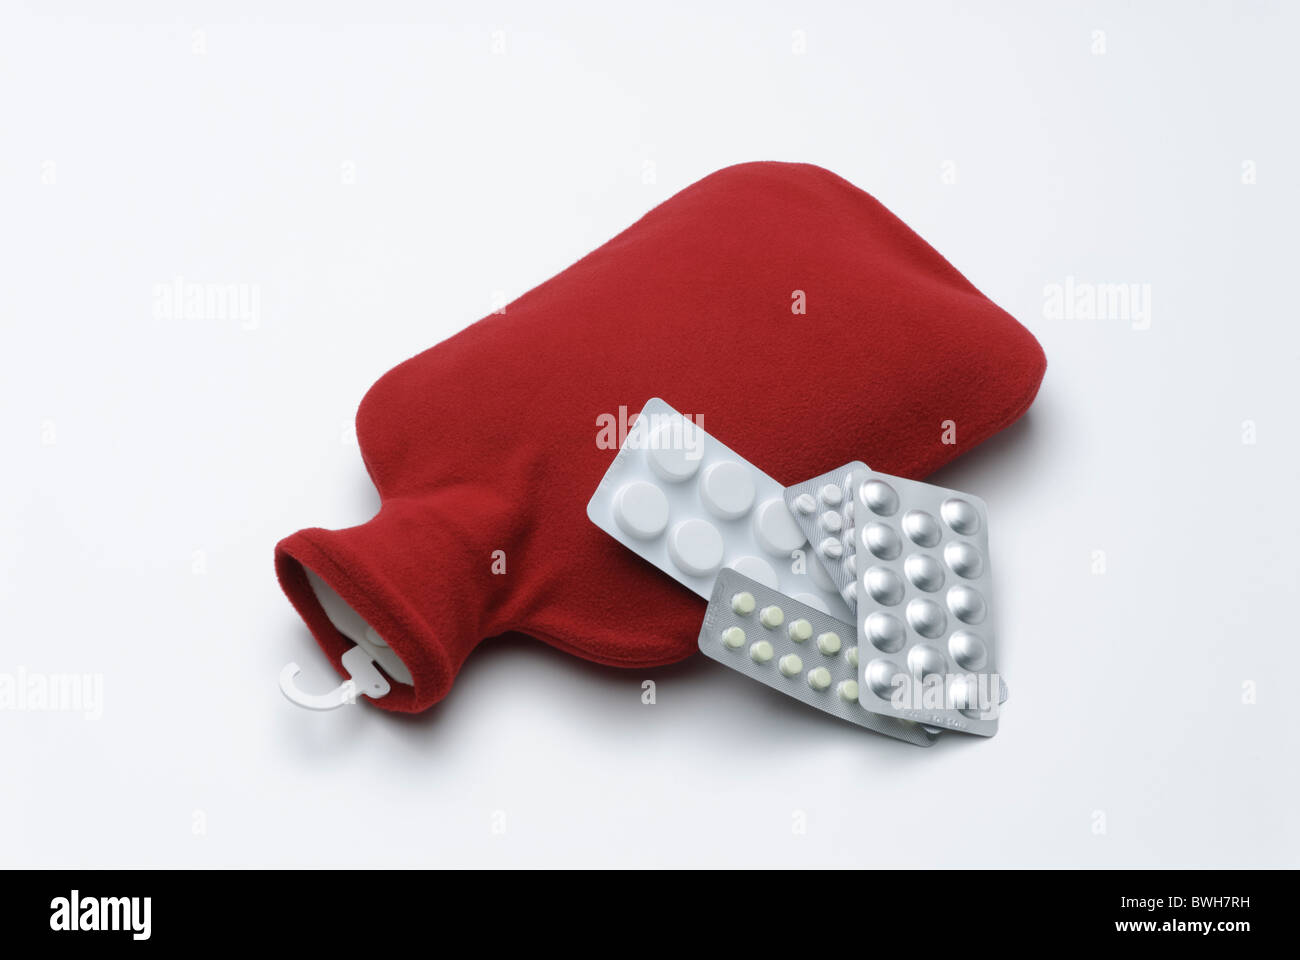 Wärmflasche mit rotem Einband und Tabletten in Blisterpackungen Stockfoto